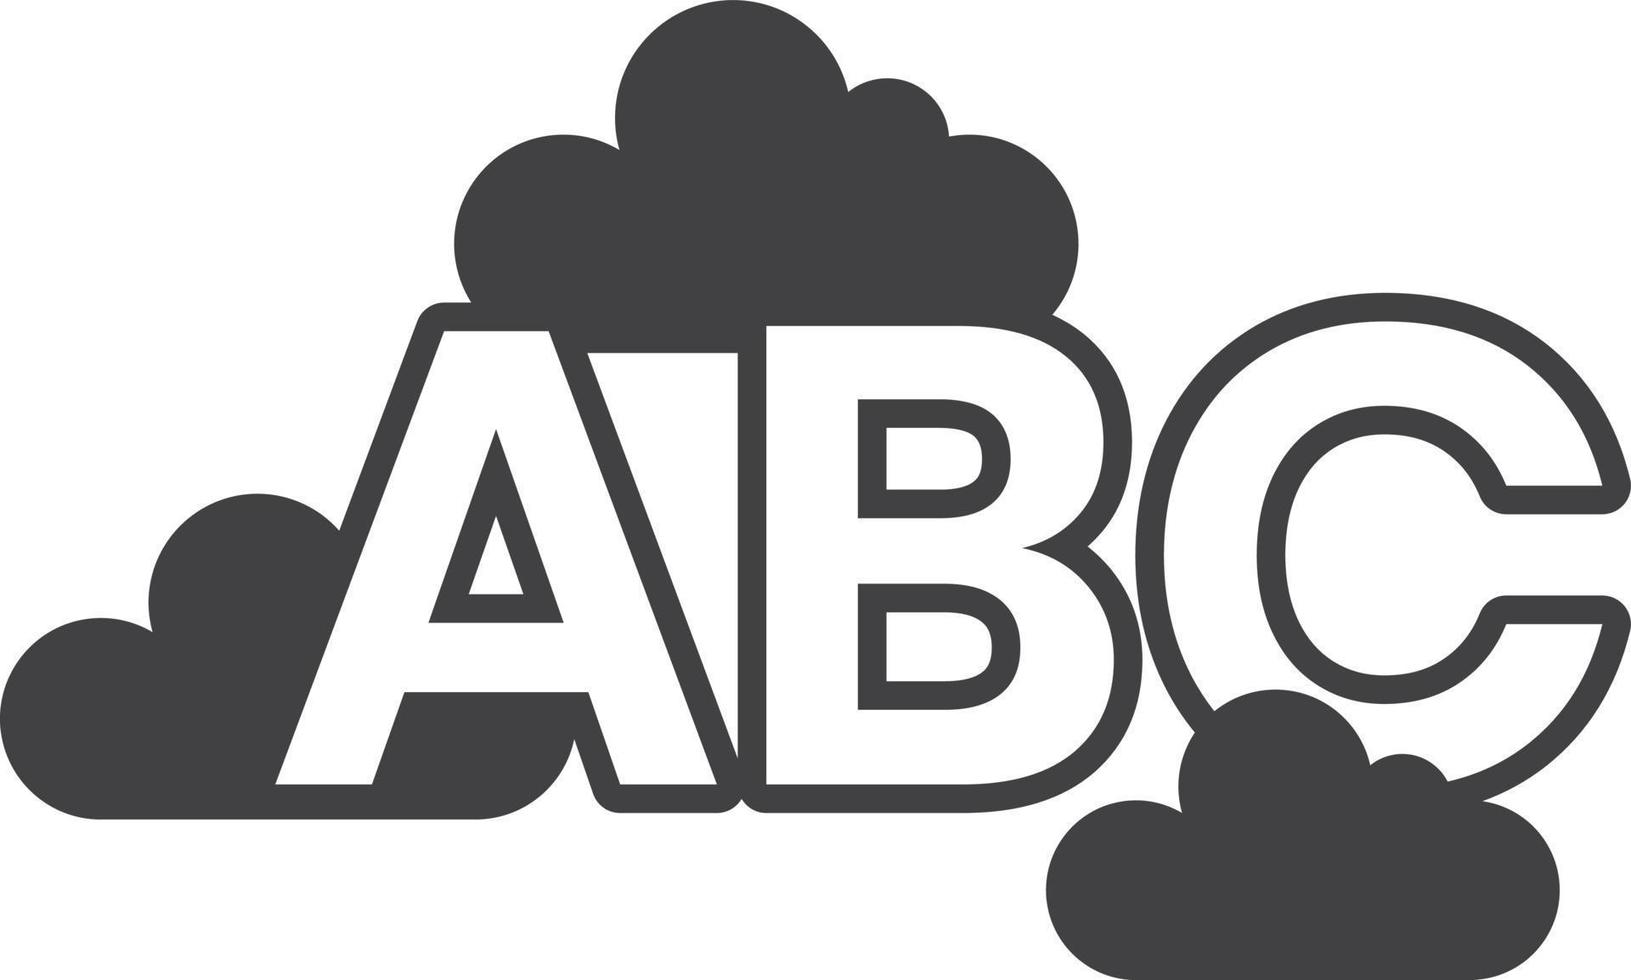 letras abc flutuando na ilustração de nuvens em estilo minimalista vetor